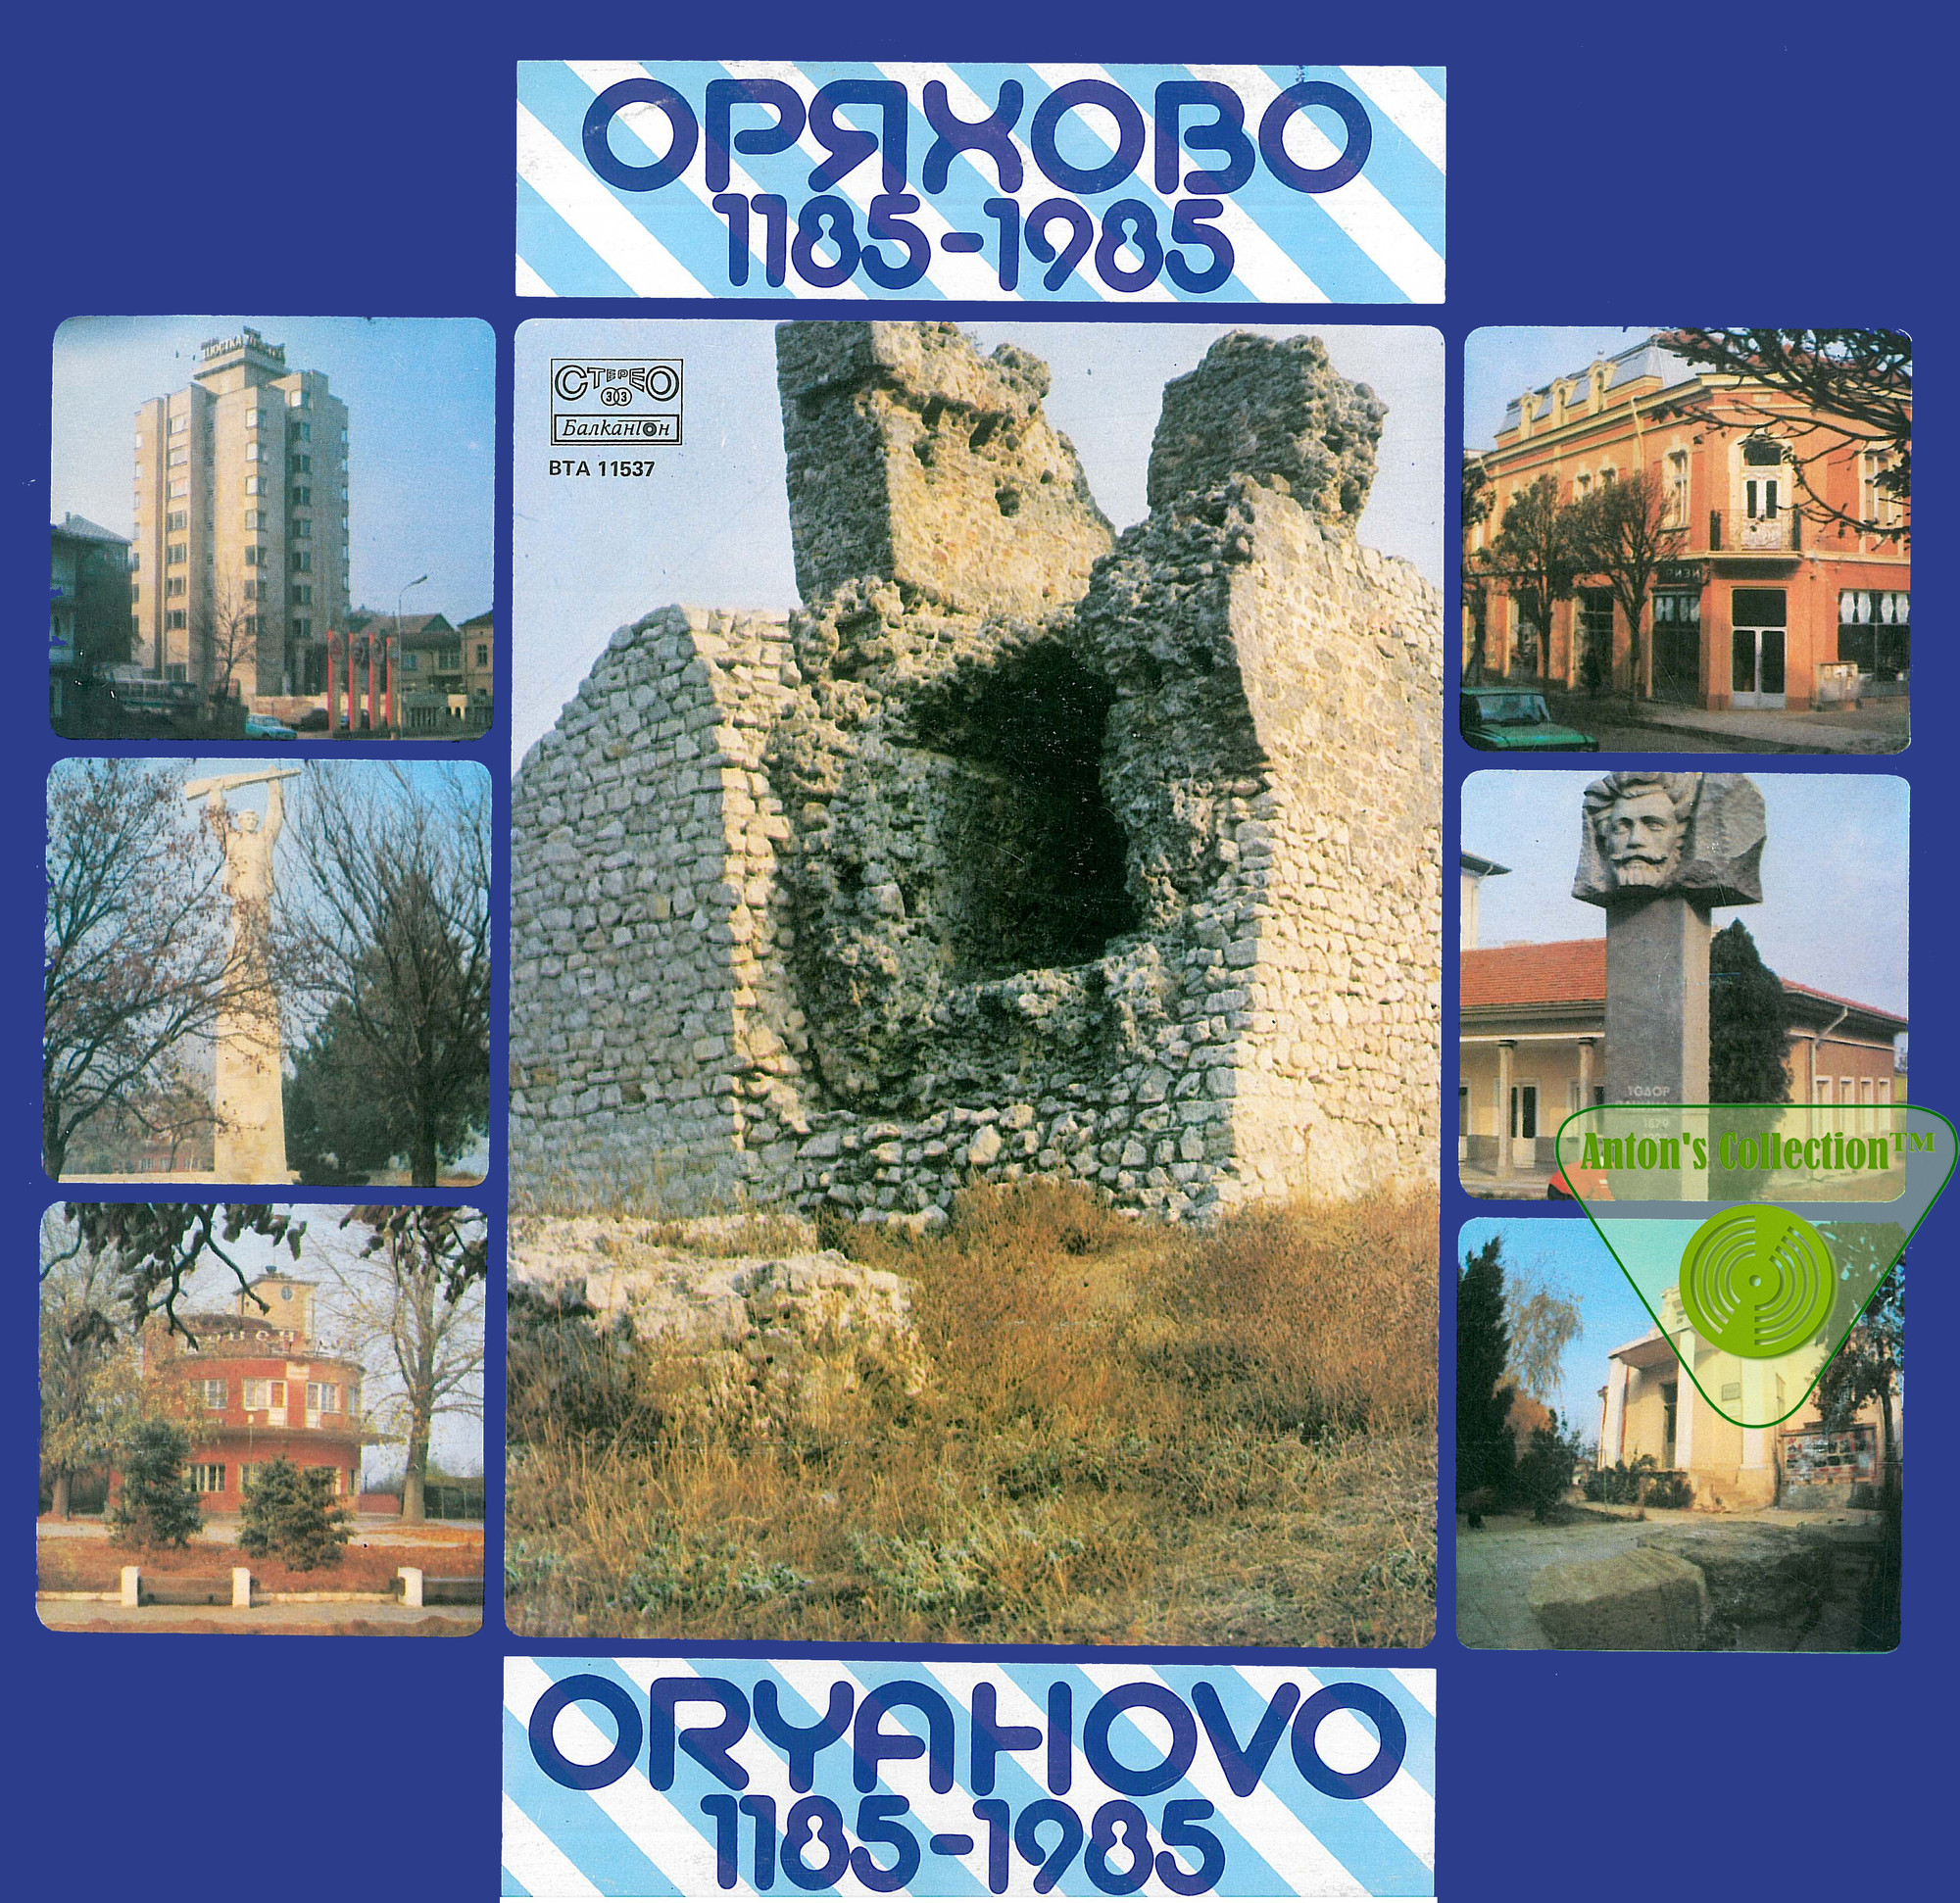 Оряхово 1185-1985